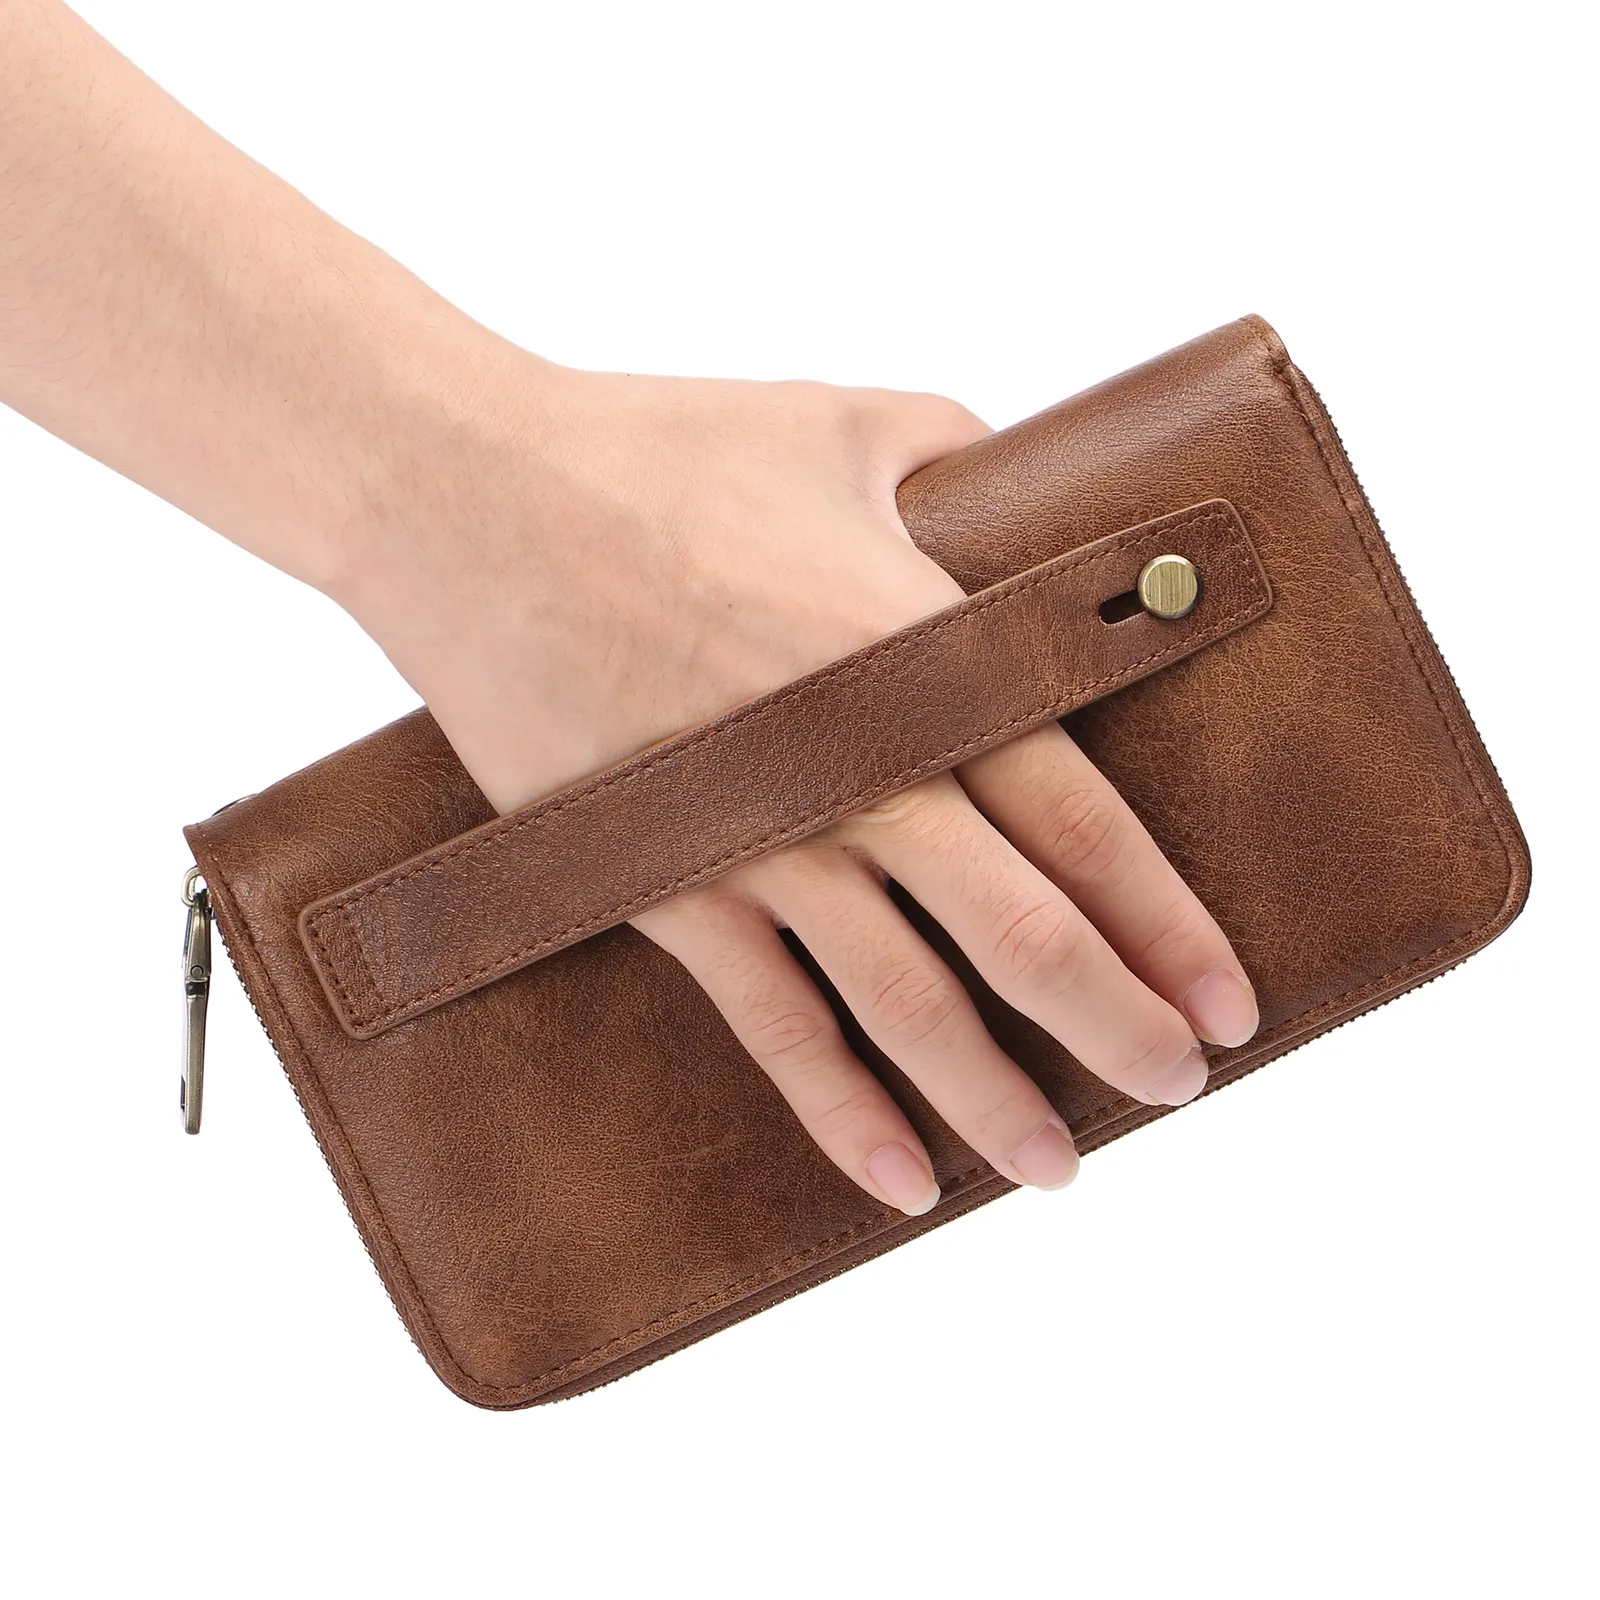 Bonne qualité PU cuir Double couche pochette portefeuille pour hommes grand portefeuille fermeture éclair sac à main porte-carte mâle main portefeuille